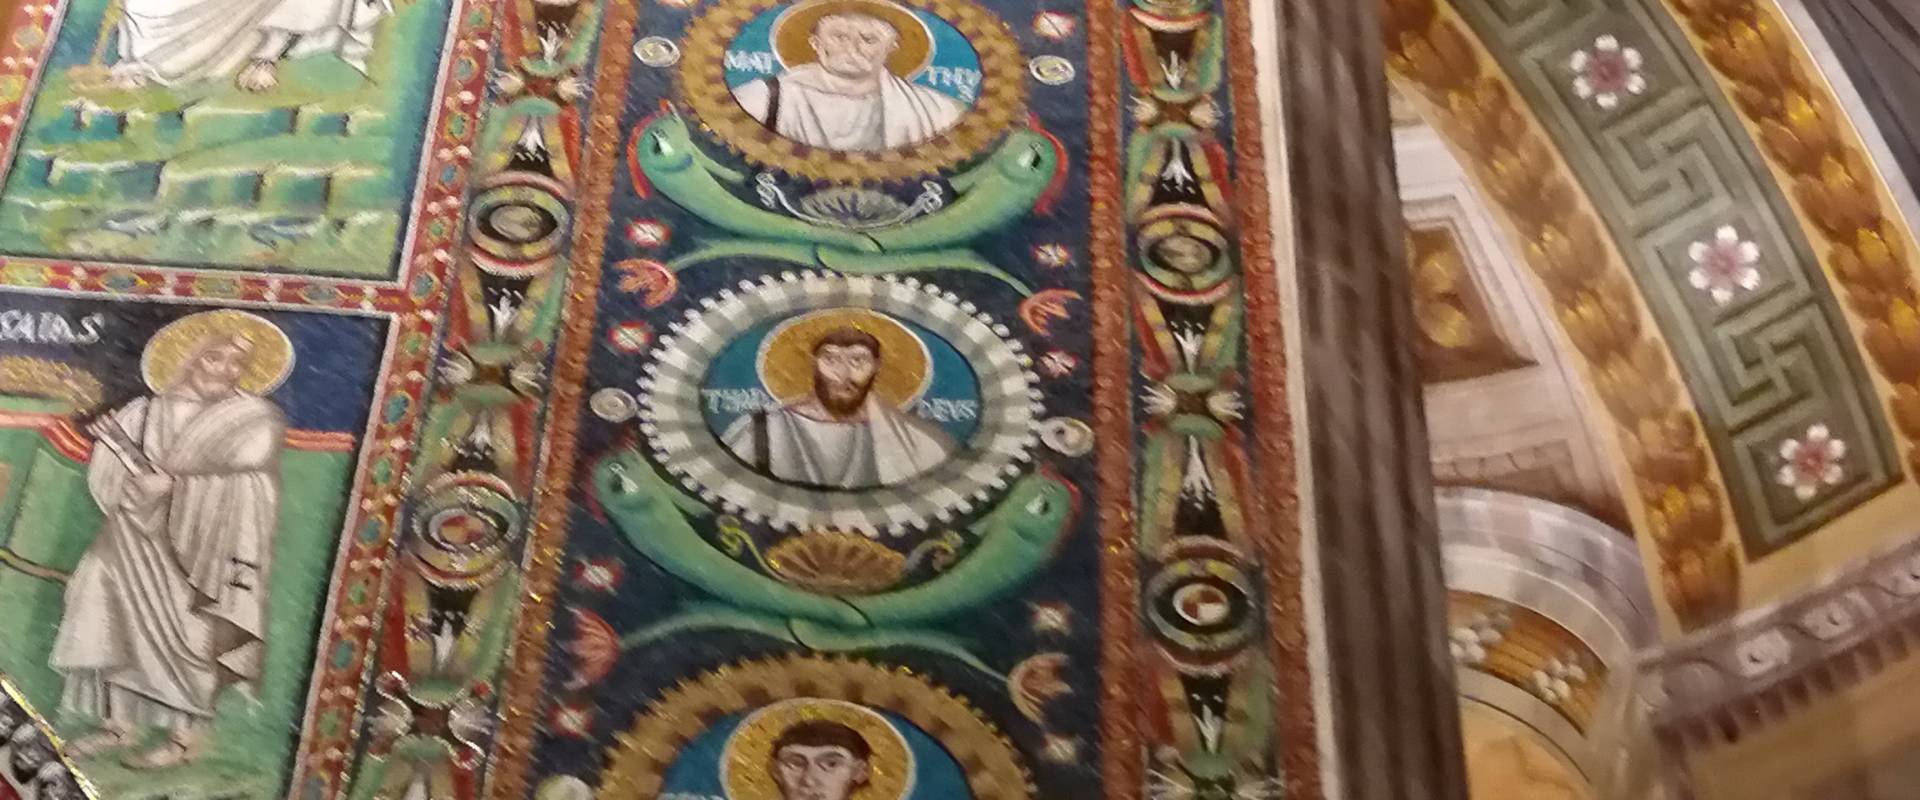 San Vitale - particolare volta con medaglioni musivi di santi foto di LadyBathory1974